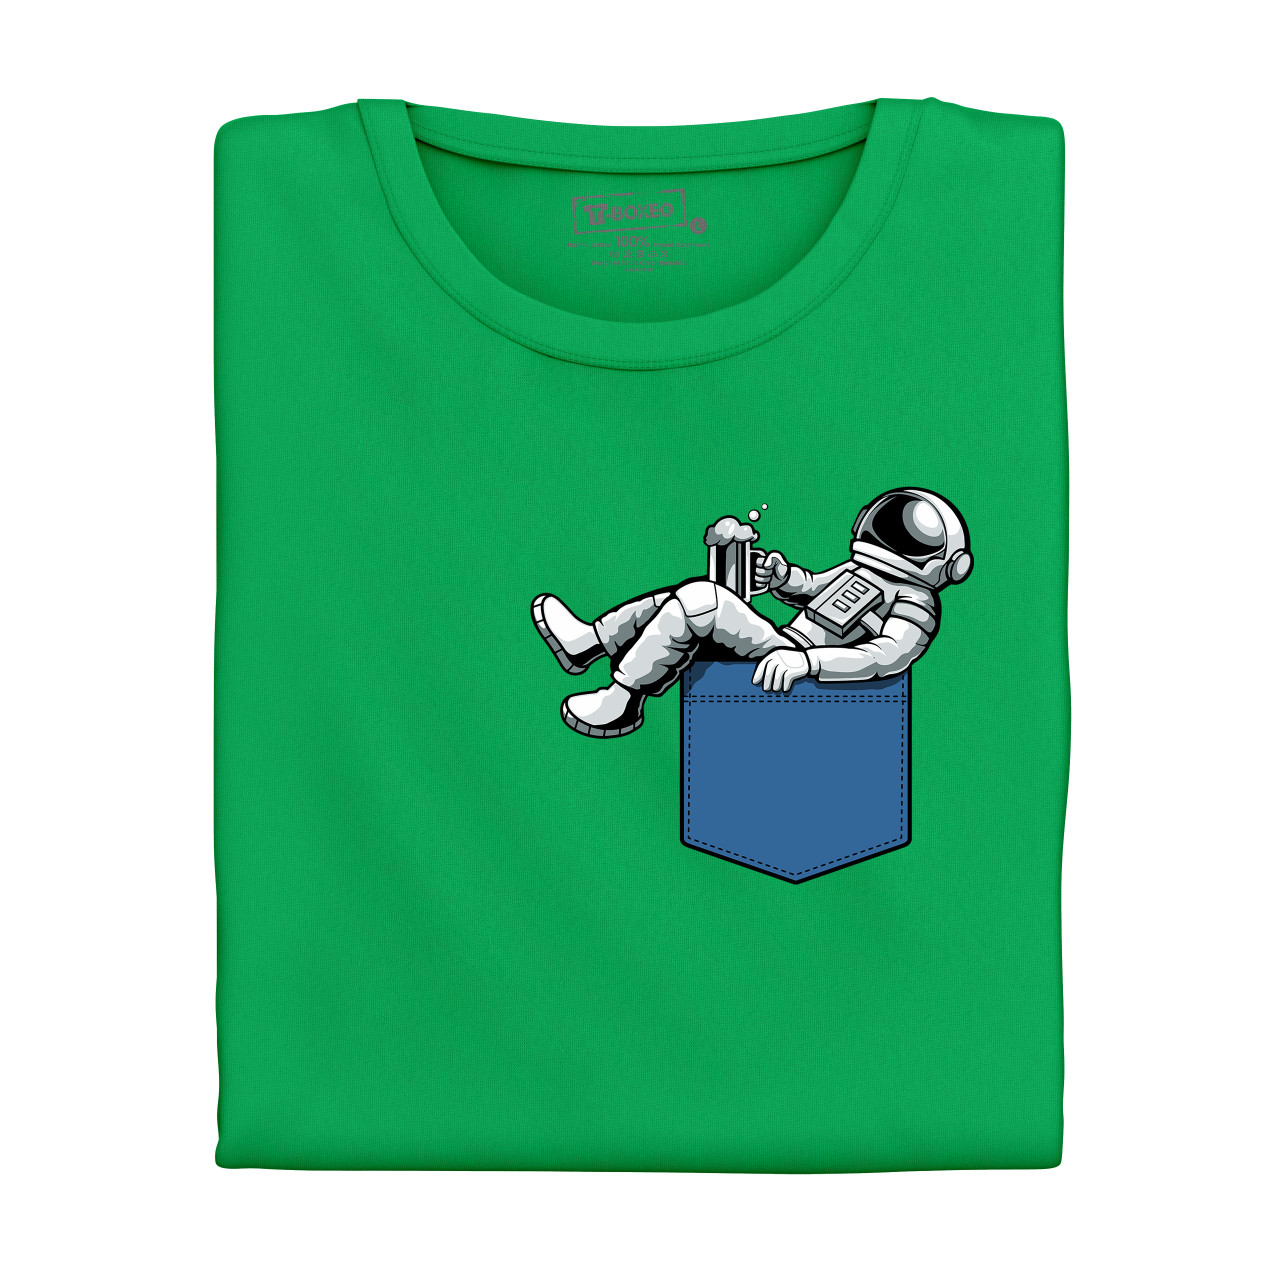 Pánské tričko s potiskem "Opilý astronaut v kapsičce"